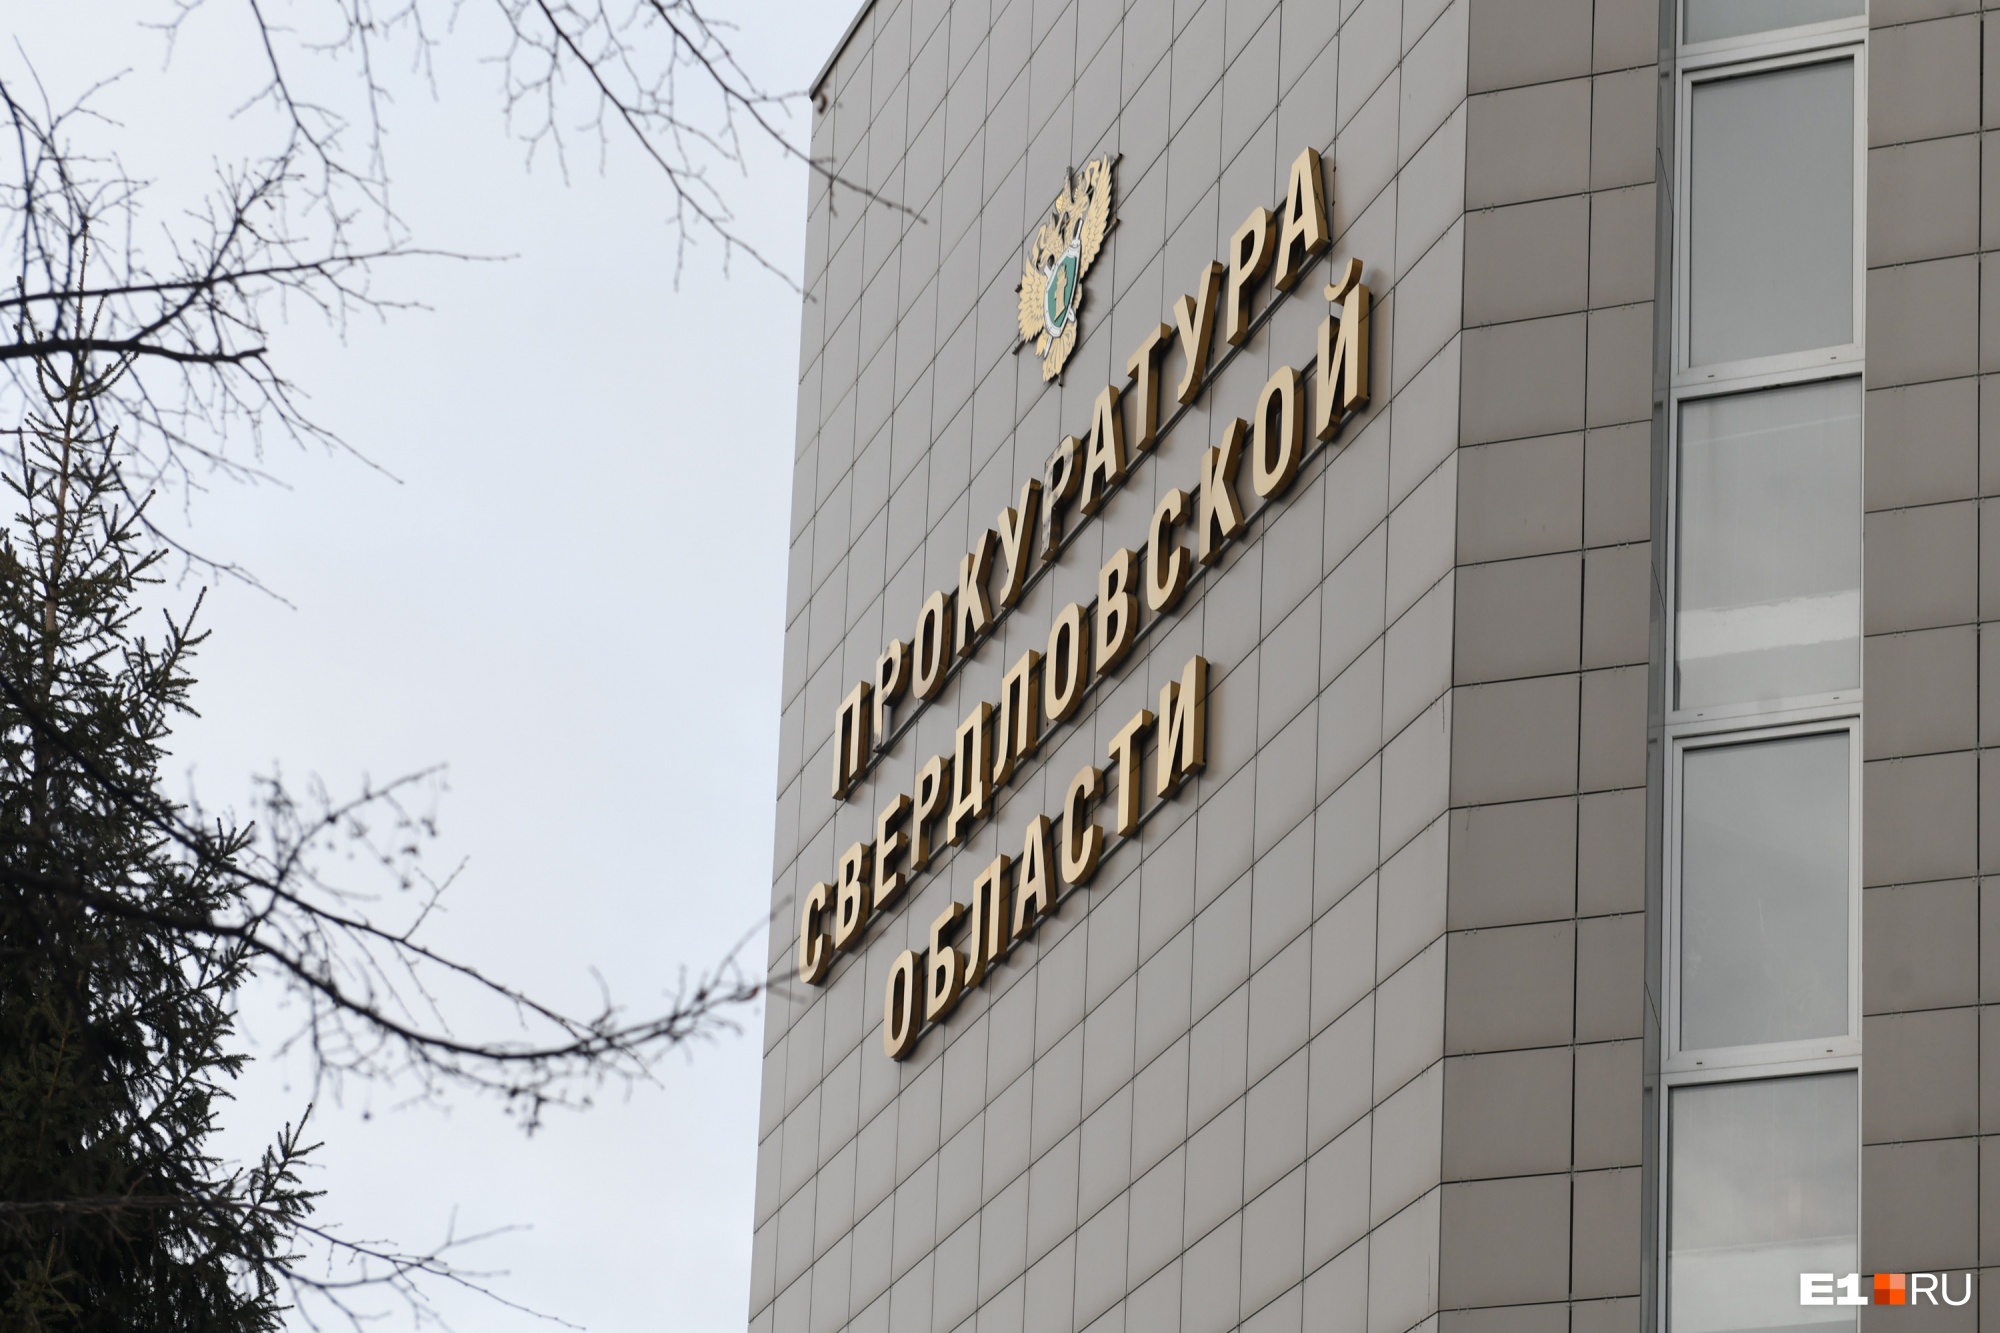 В прокуратуре Свердловской области массово увольняются сотрудники. Рассказываем, что произошло